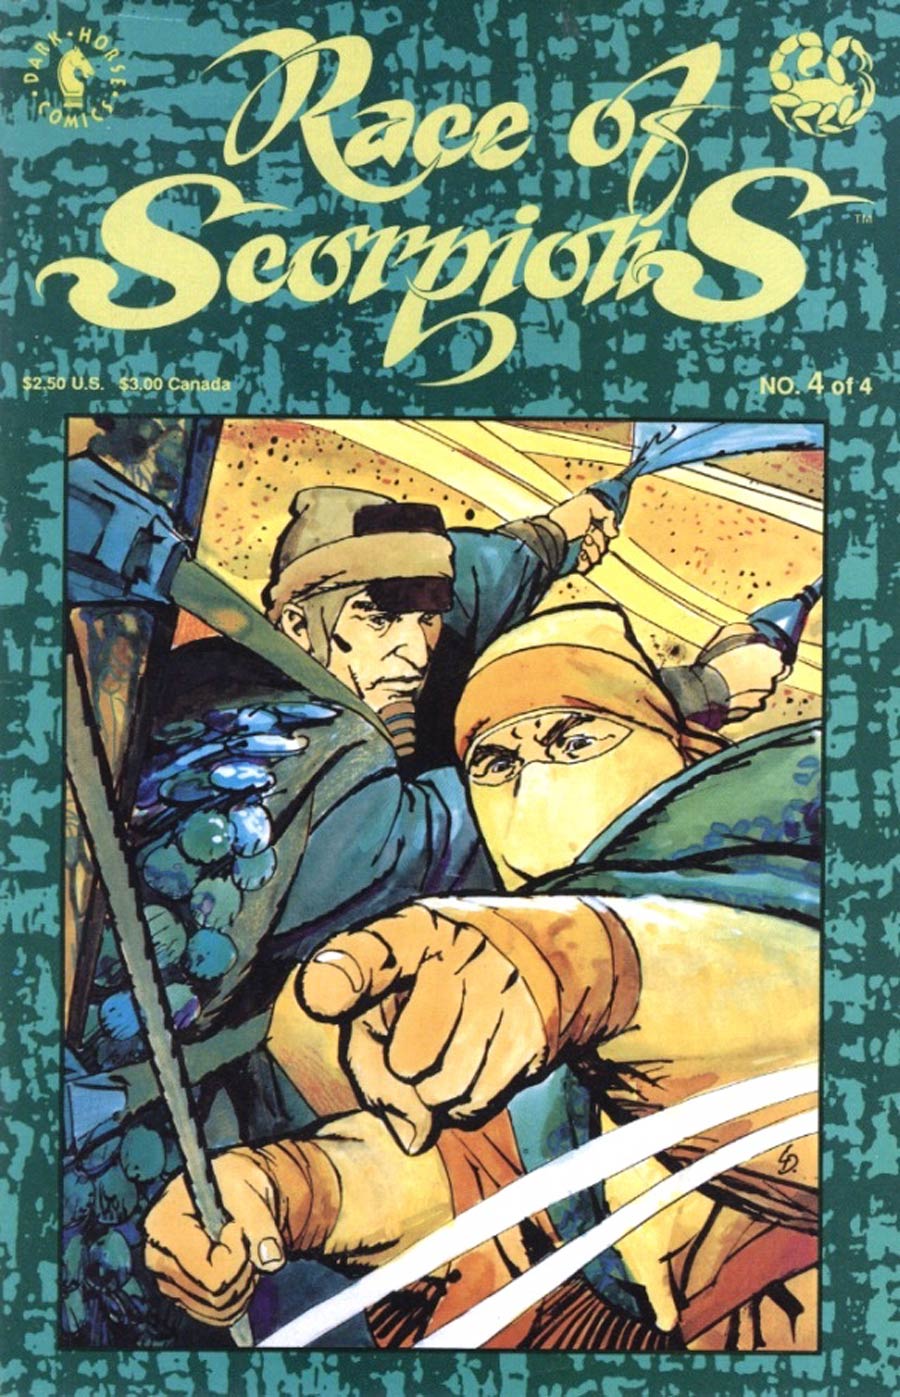 Race Of Scorpions Vol 2 #4